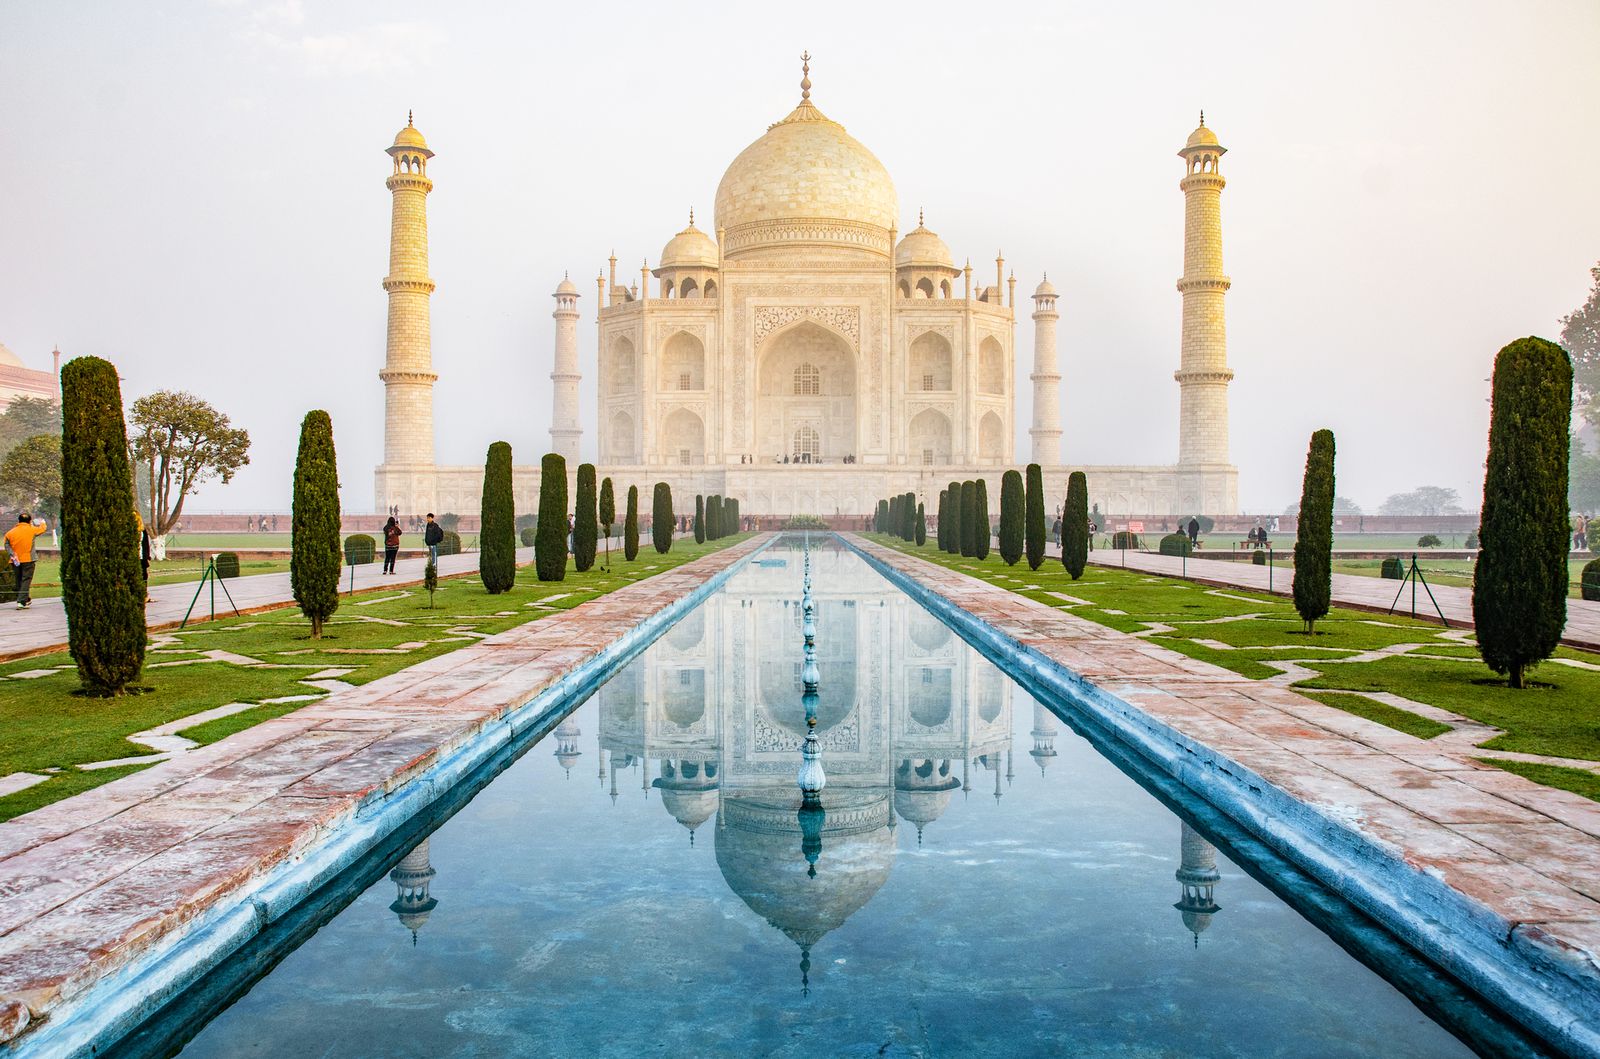 人生観が変わる国 インド 徹底的に楽しむおすすめ観光スポット7選 Retrip リトリップ